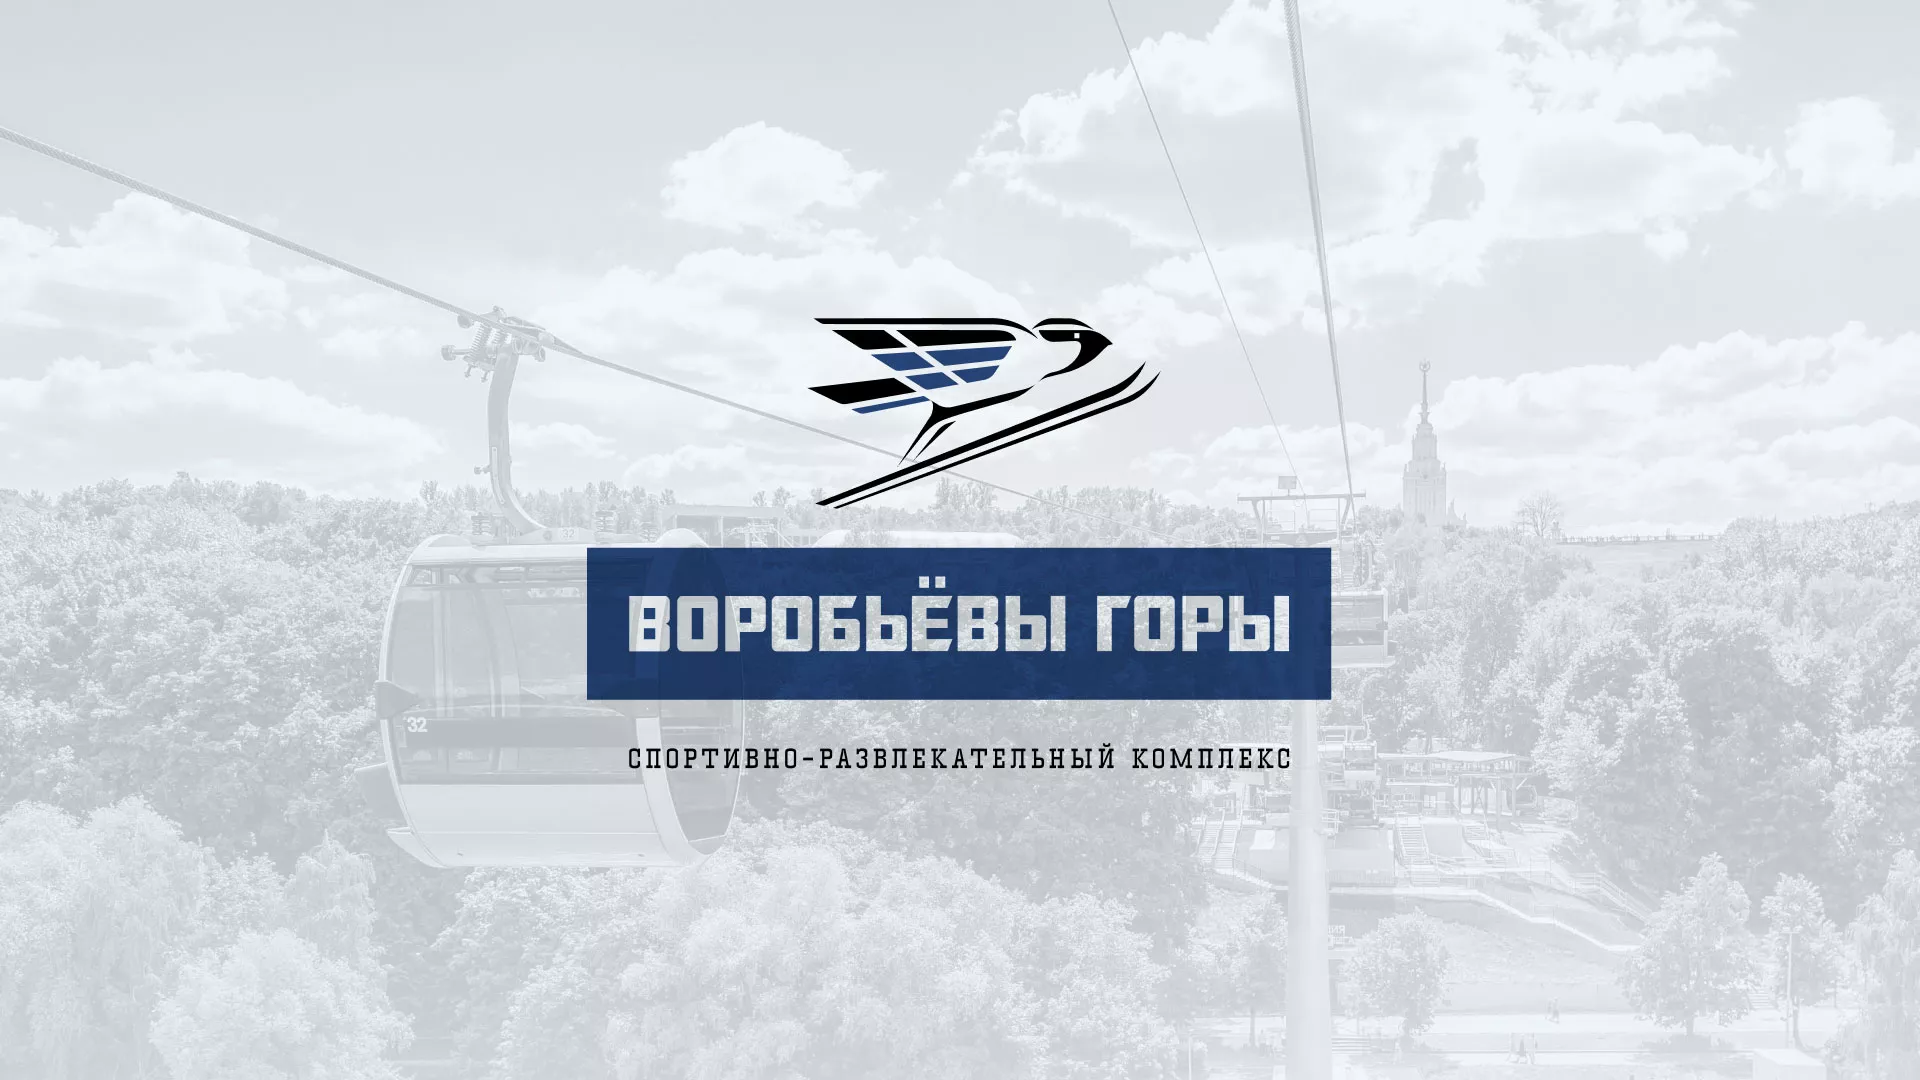 Разработка сайта в Михайлове для спортивно-развлекательного комплекса «Воробьёвы горы»